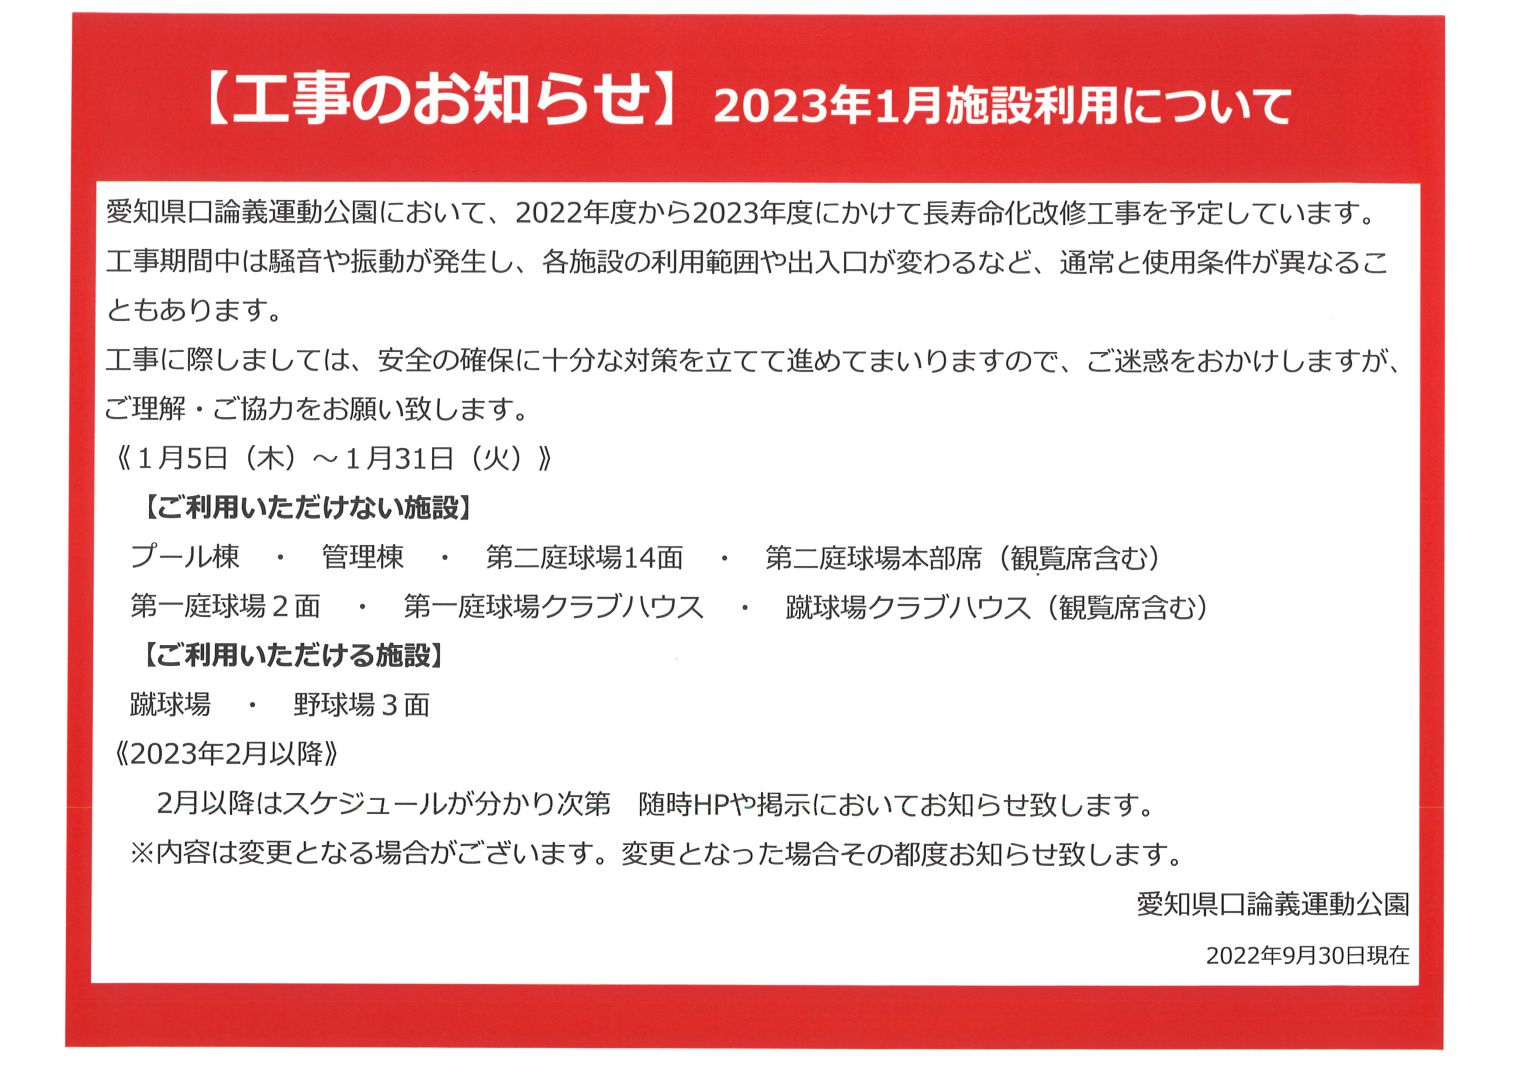 【工事のお知らせ】2023年1月施設利用について